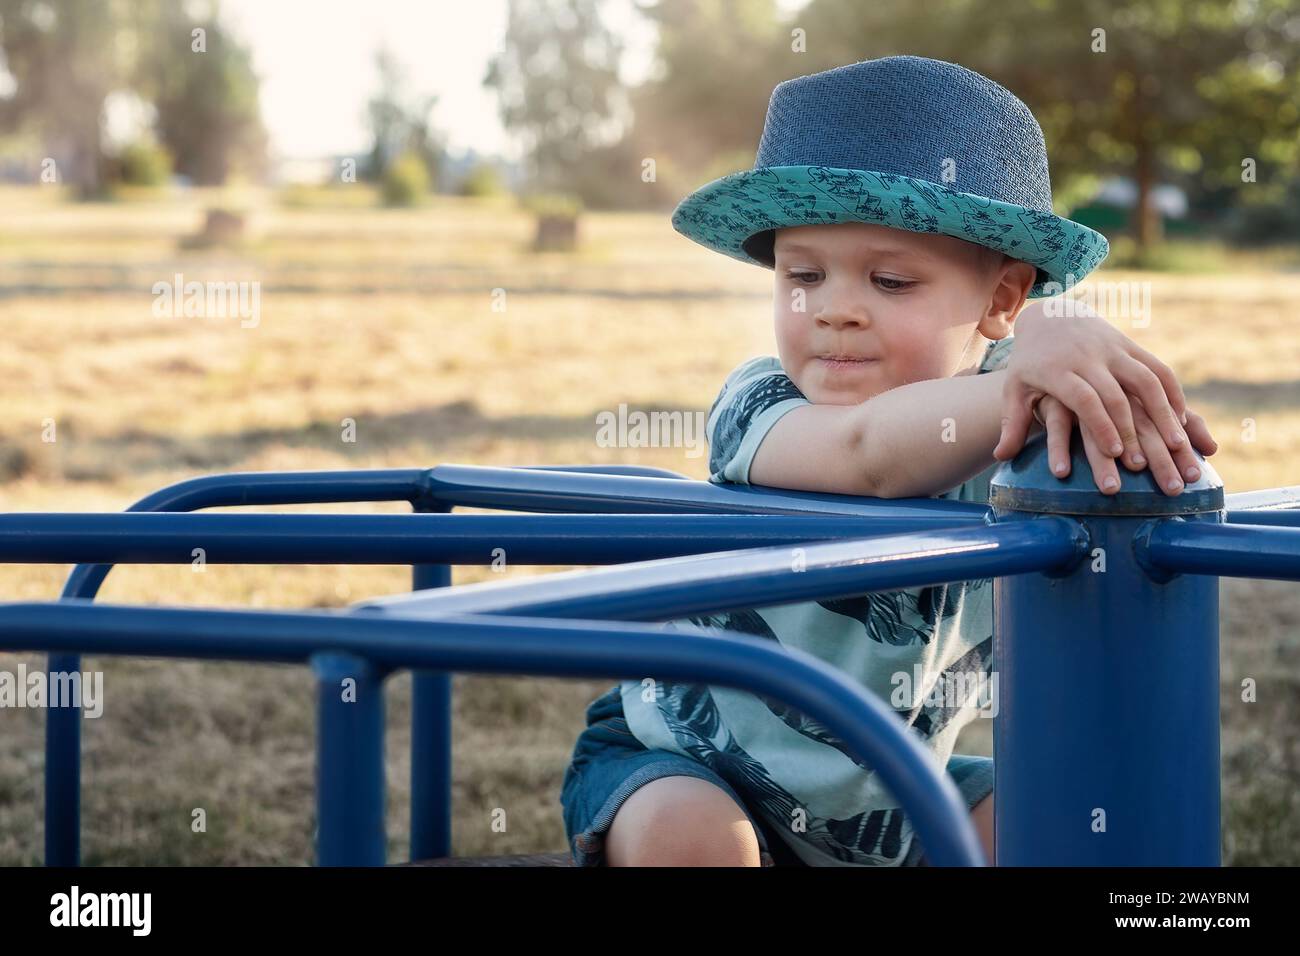 Ein ernster und nachdenklicher kleiner Junge posiert für einen Fotografen an einem sonnigen Tag in einem blauen Outdoor-Karussell. Stockfoto